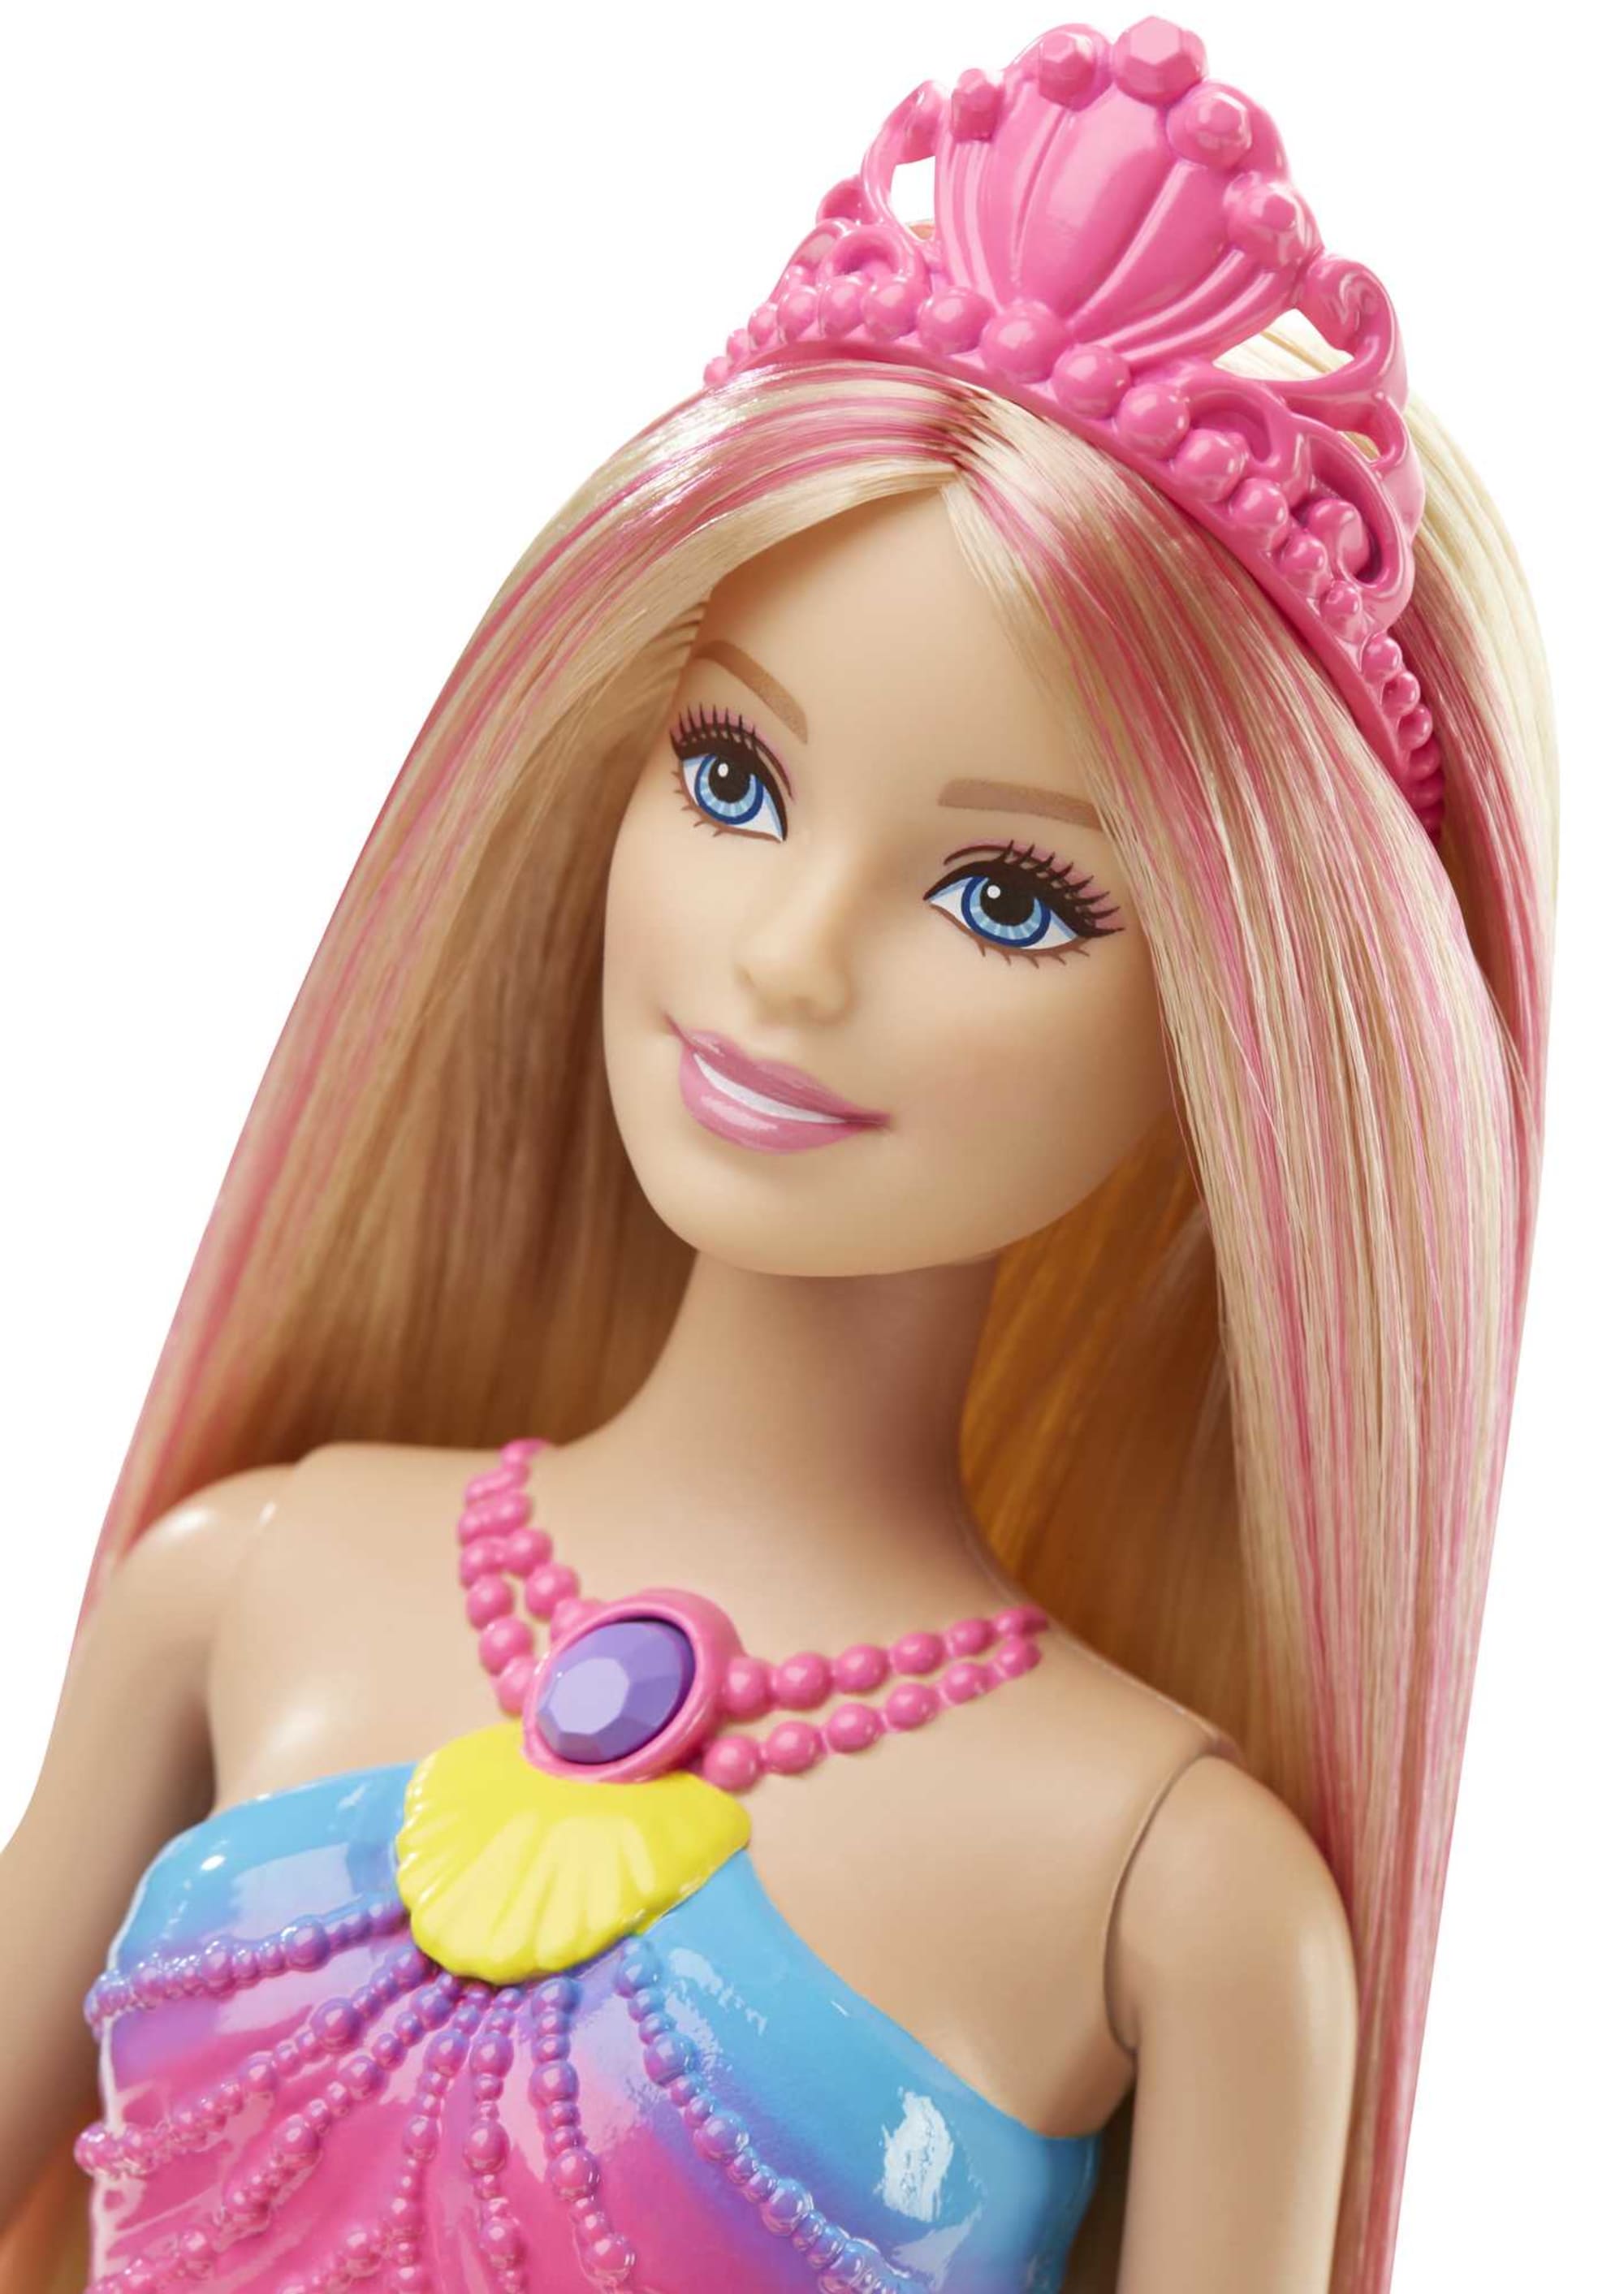 Barbie Rainbow Lights Mermaid Doll | Mattel